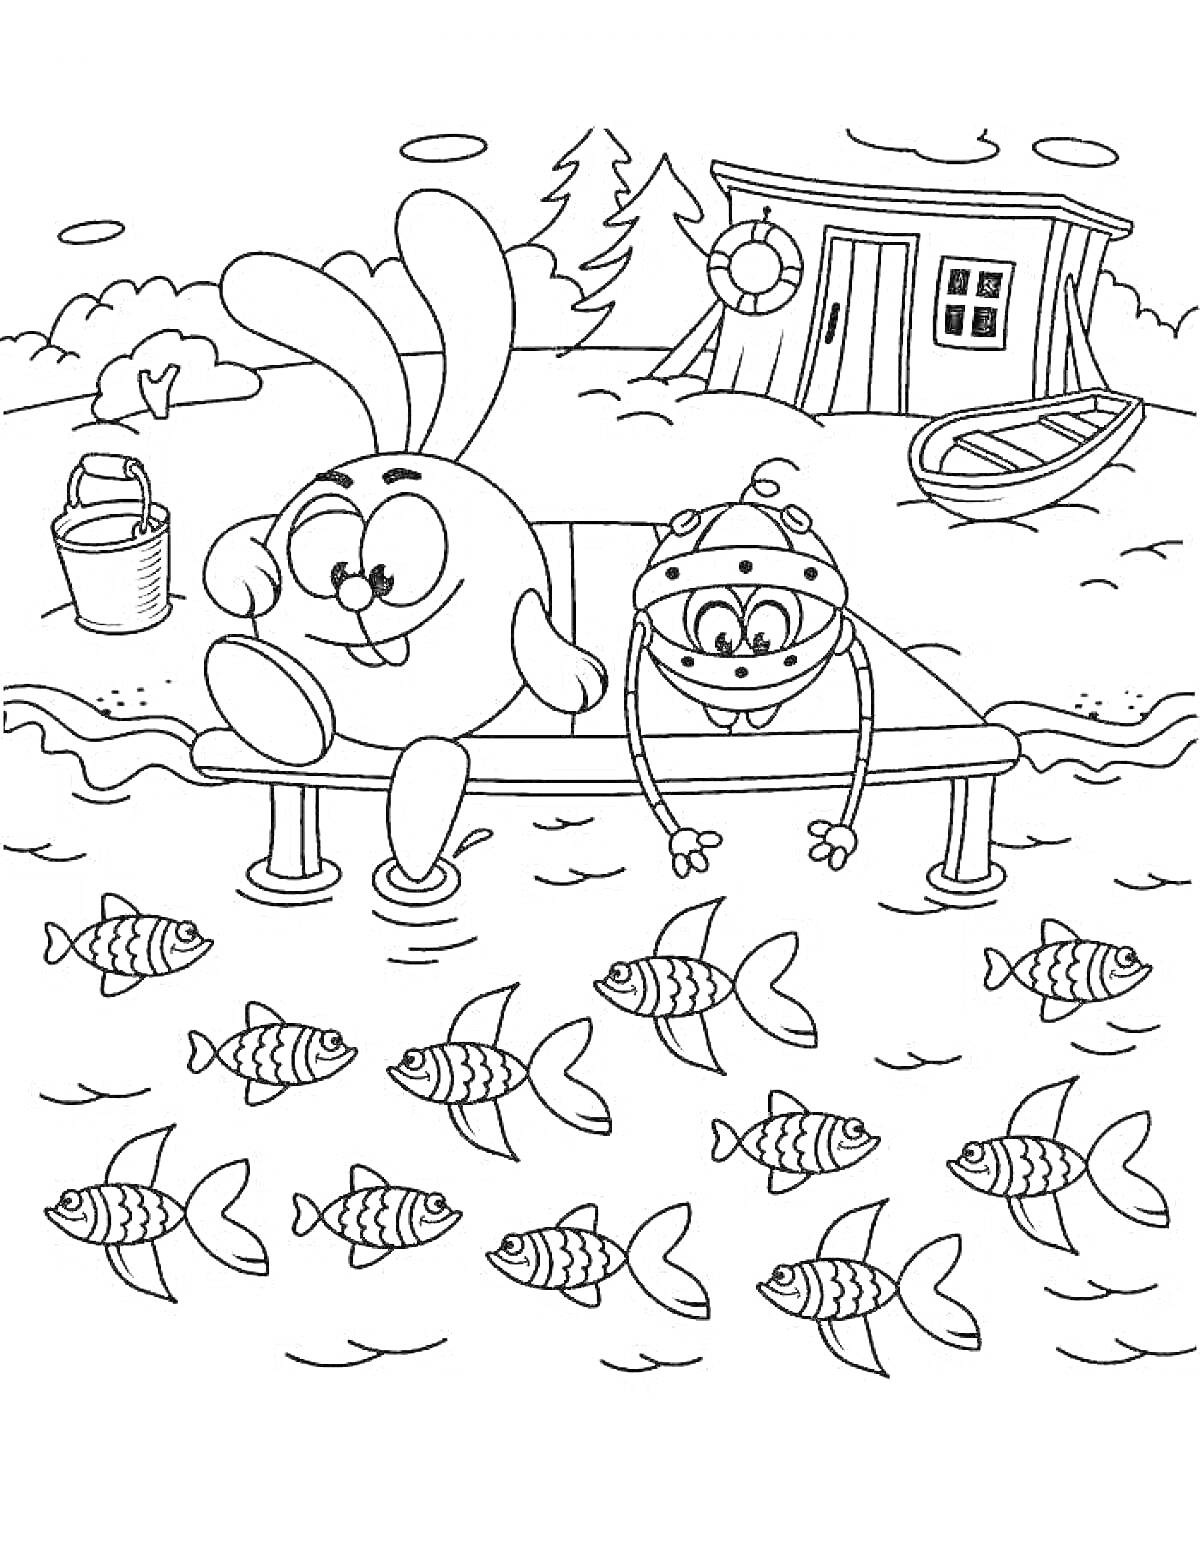 Раскраска Смешарики на пирсе, два персонажа на пирсе ловят рыбу, дом и лес на заднем плане, ведро и лодка рядом